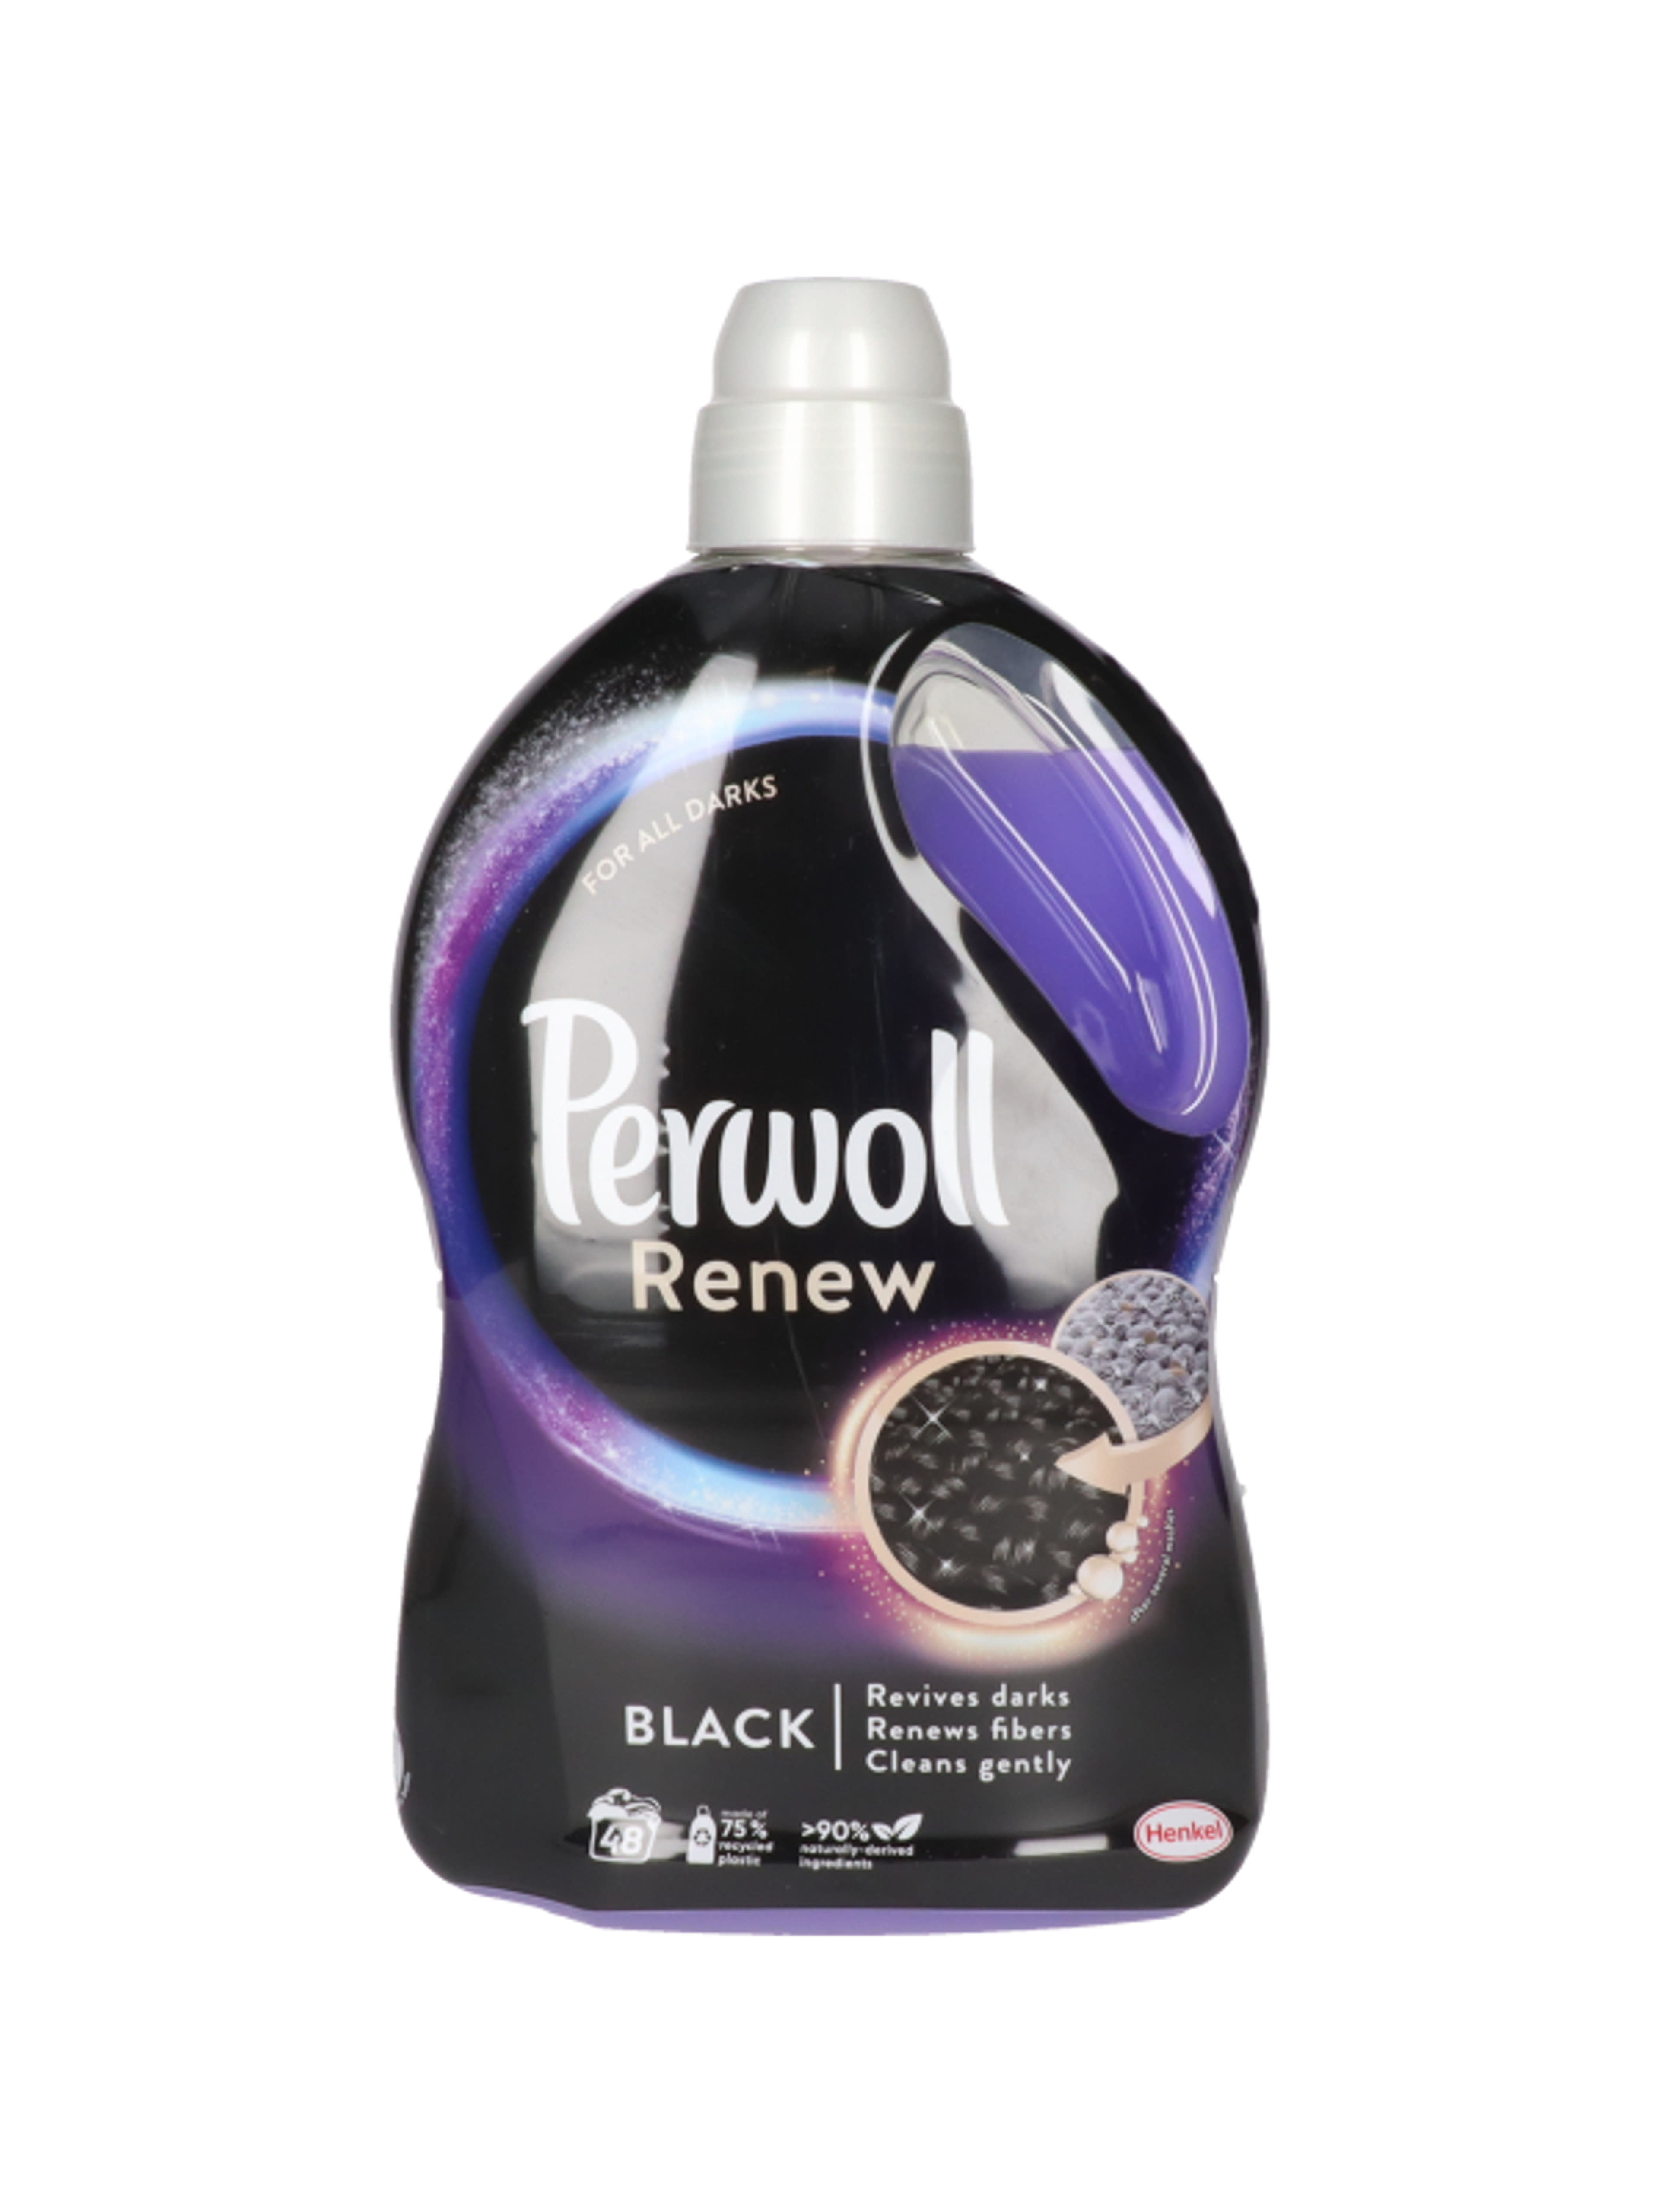 Perwoll Renew&Black kímélő mosószer, 48 mosás - 2880 ml